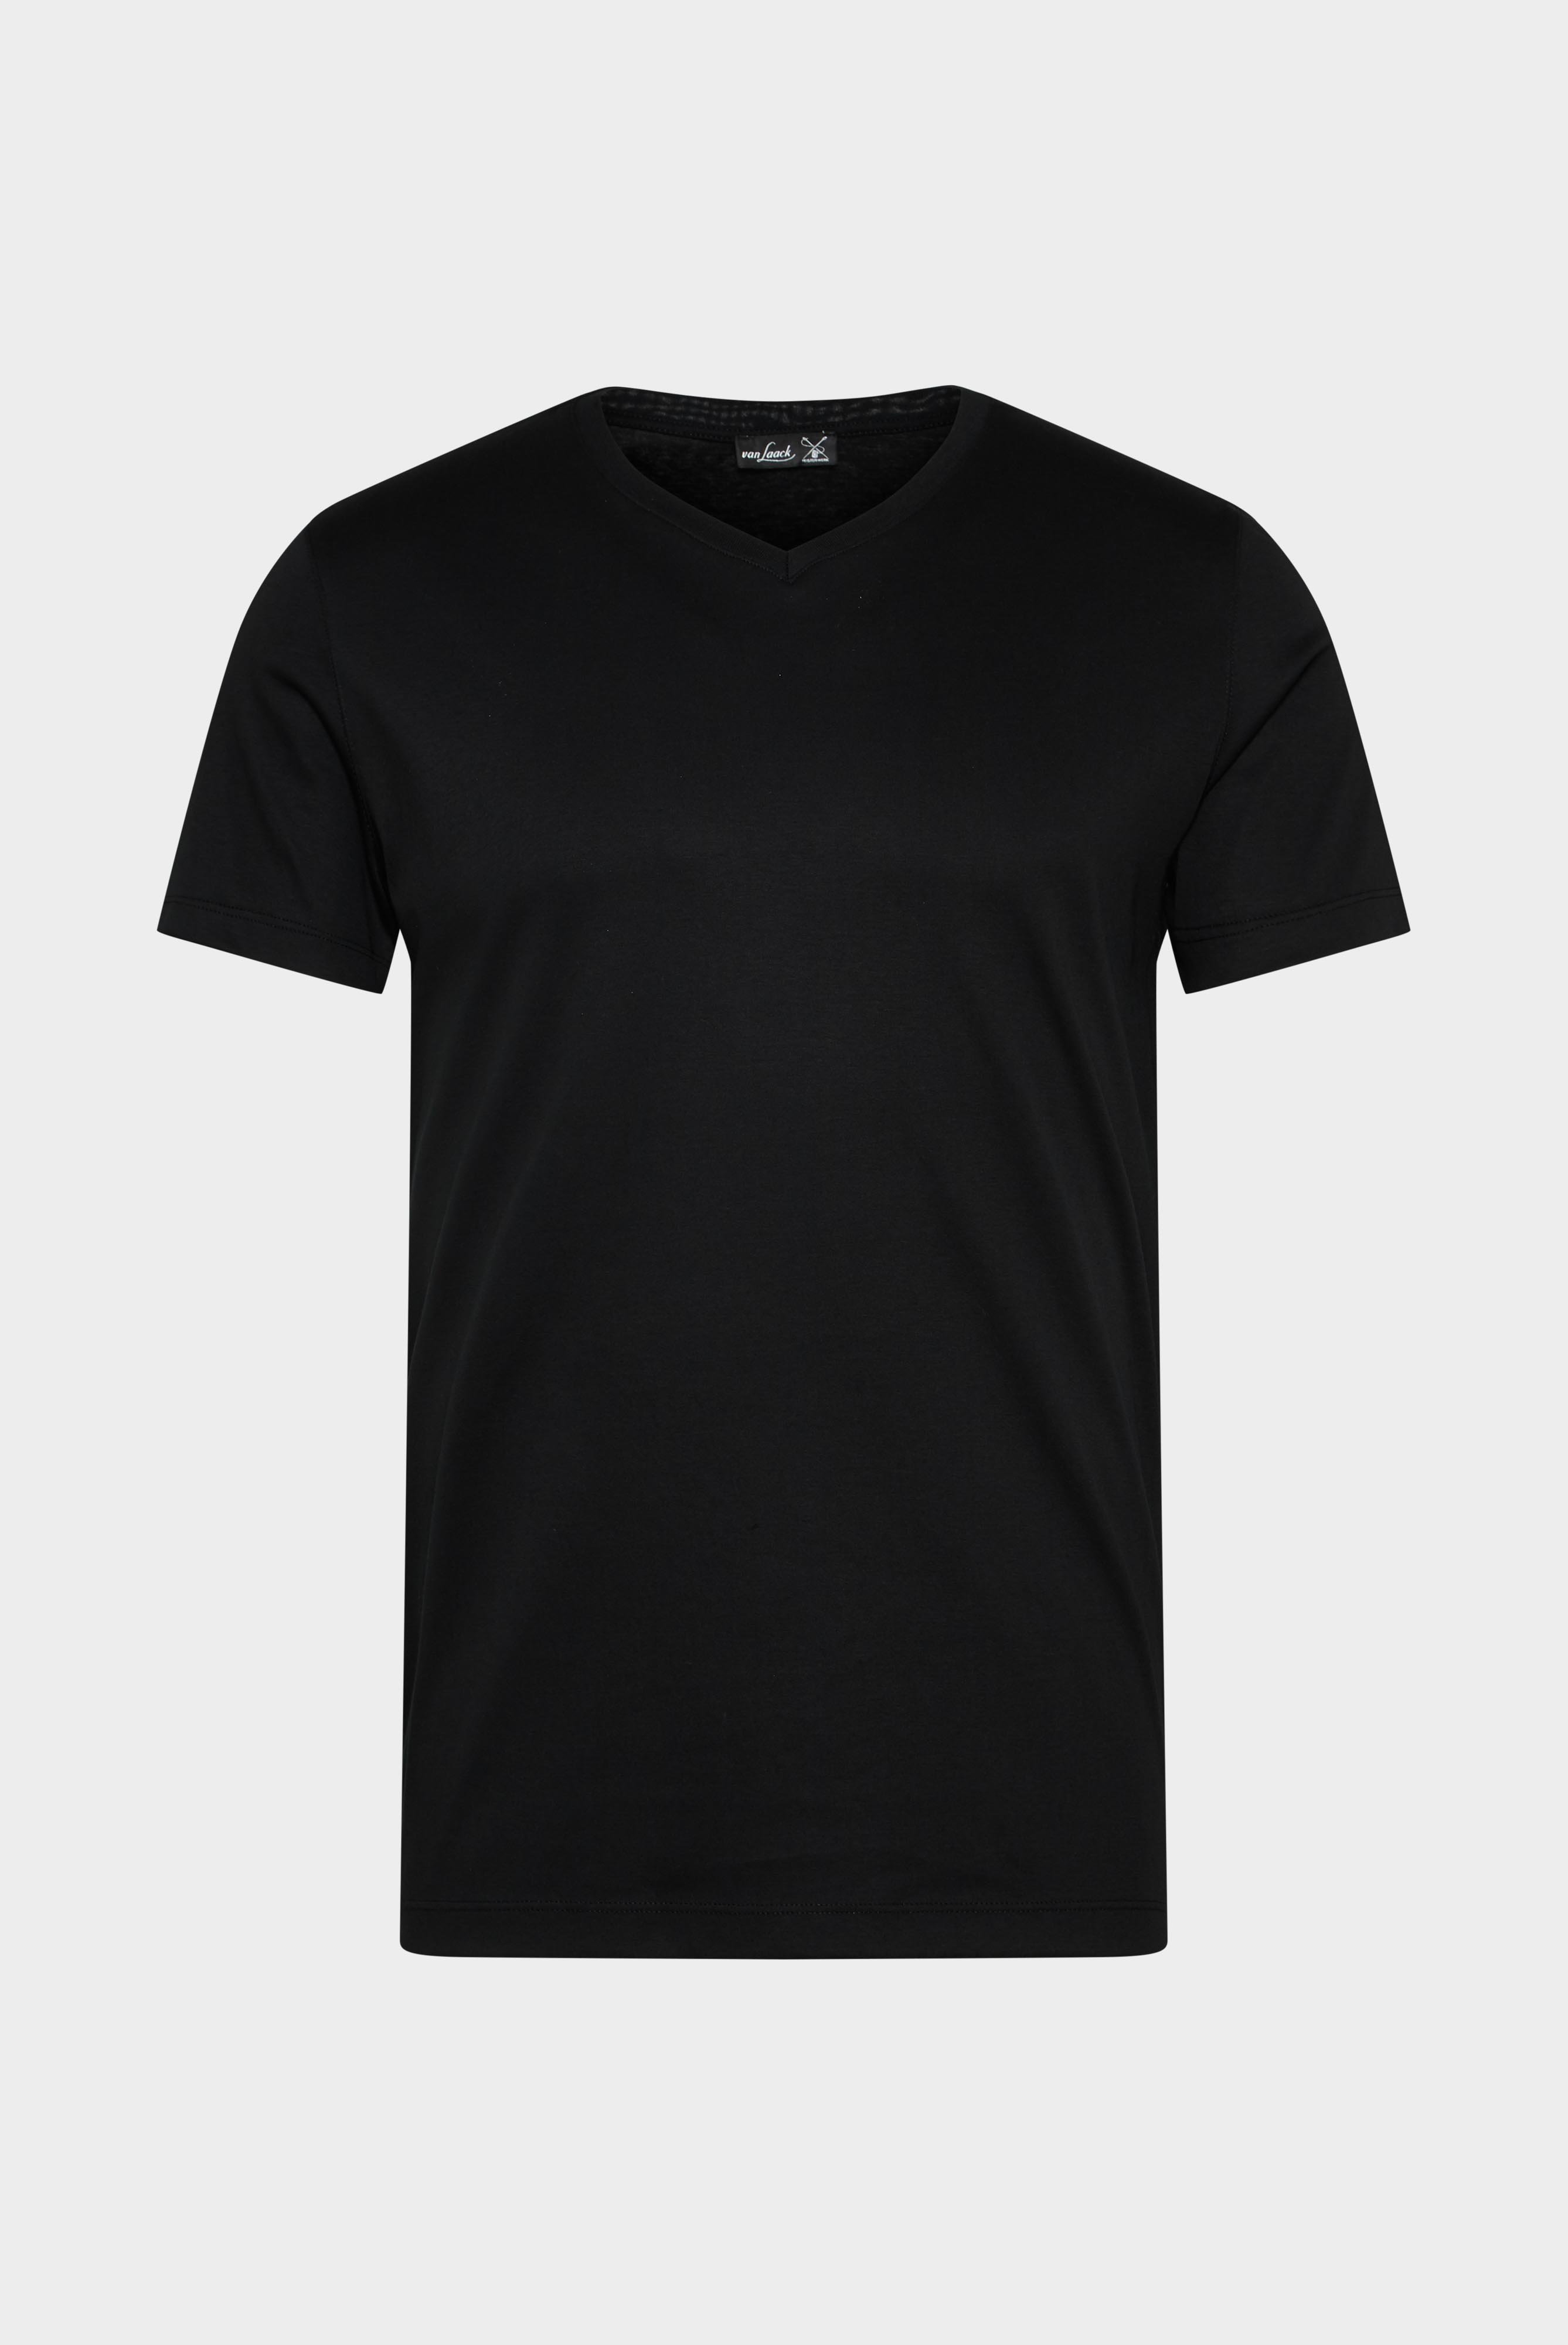 T-Shirts+V-Ausschnitt Jersey T-Shirt Slim Fit+20.1715.UX.180031.099.L